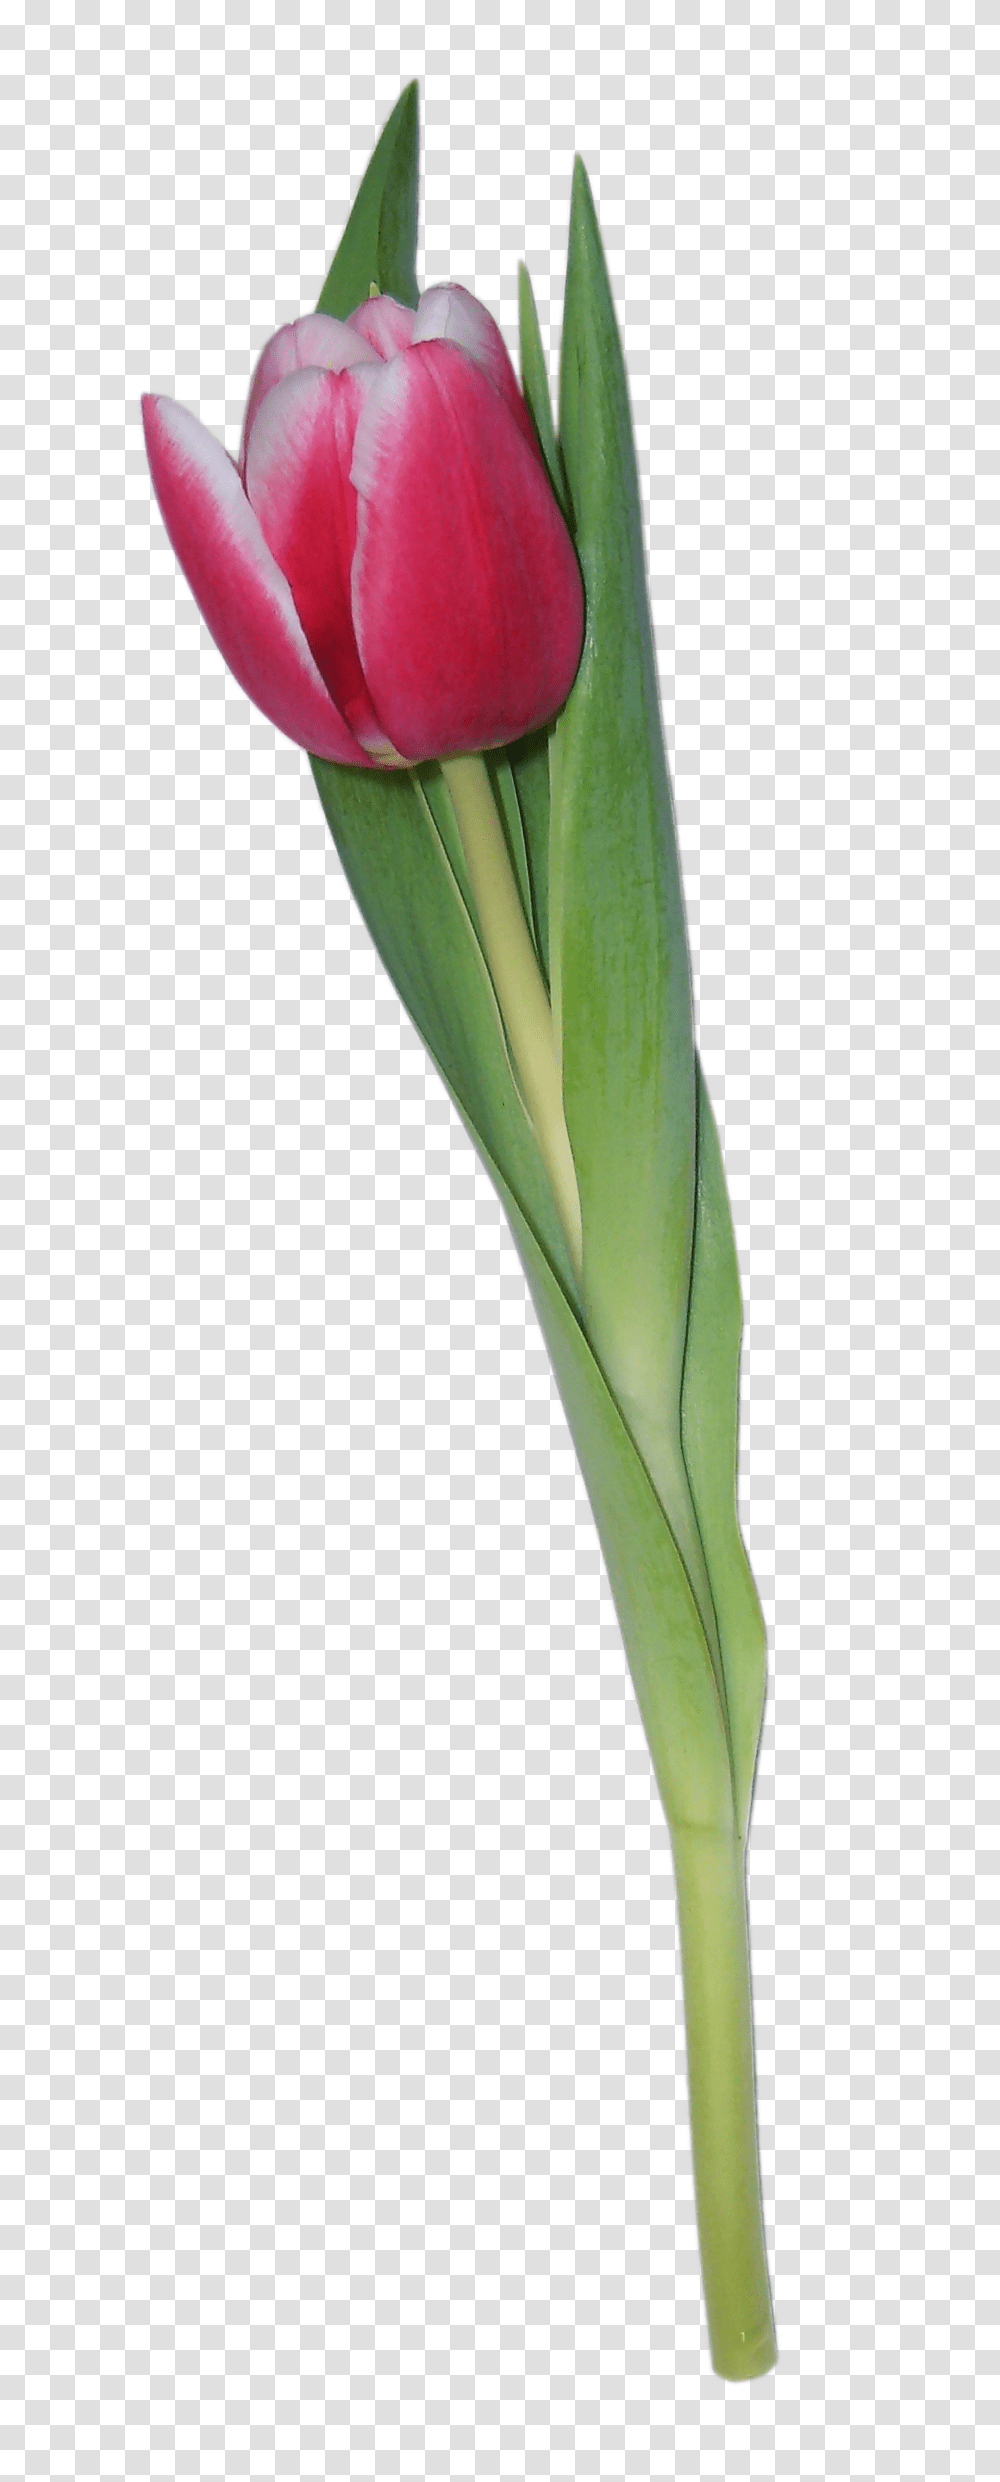 Tulip, Flower, Plant, Vegetable, Food Transparent Png